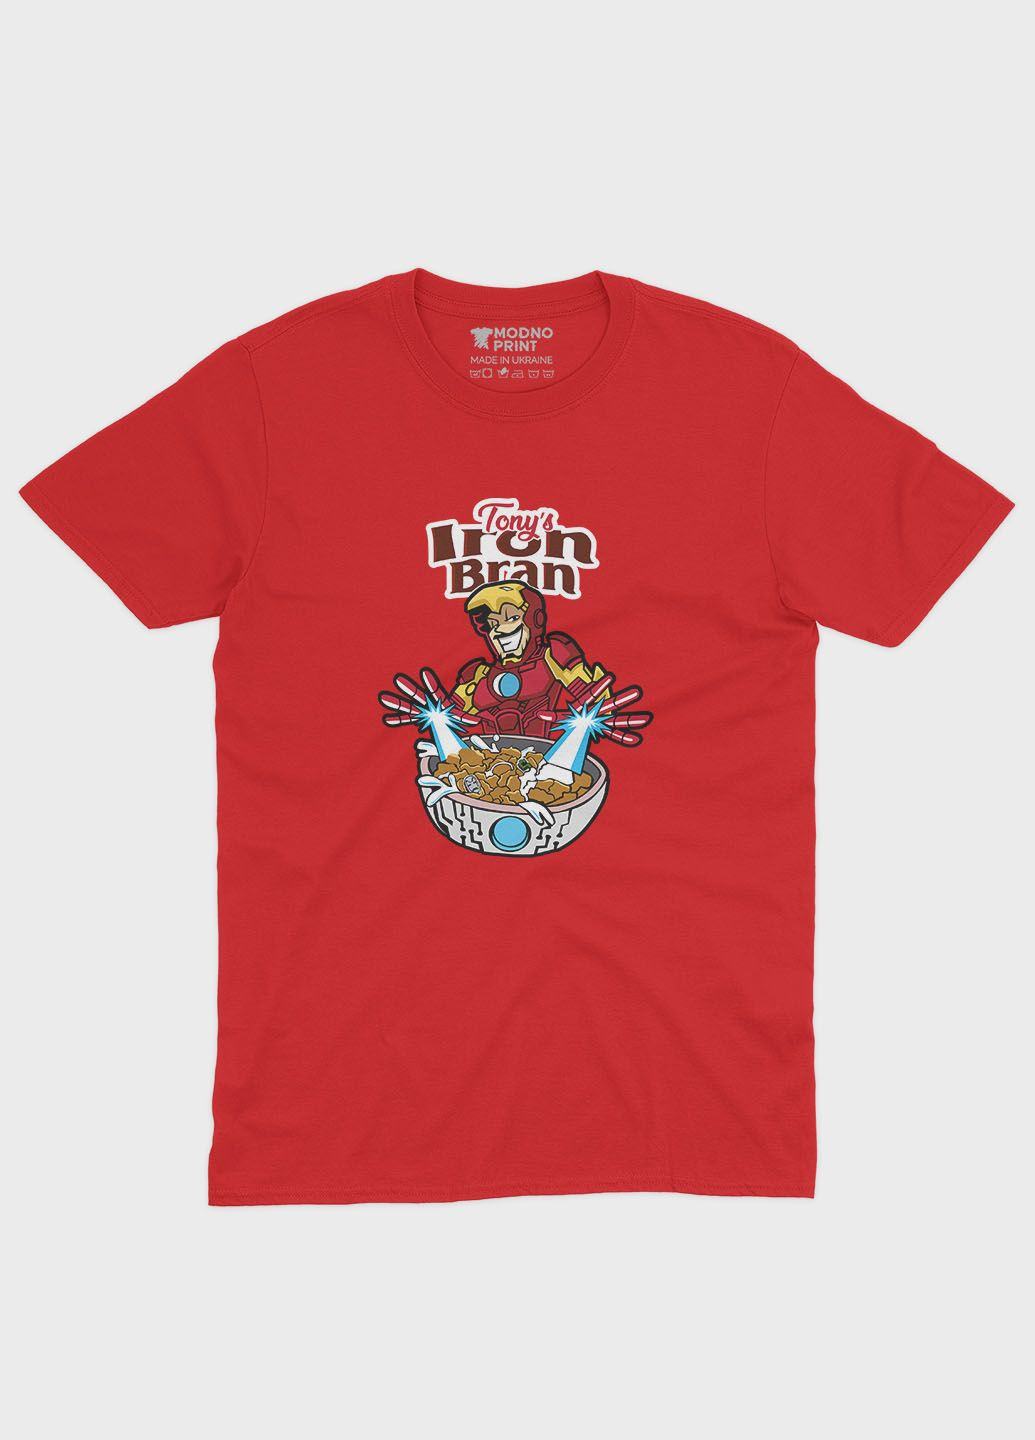 Красная демисезонная футболка для мальчика с принтом супергероя - железный человек (ts001-1-sre-006-016-013-b) Modno